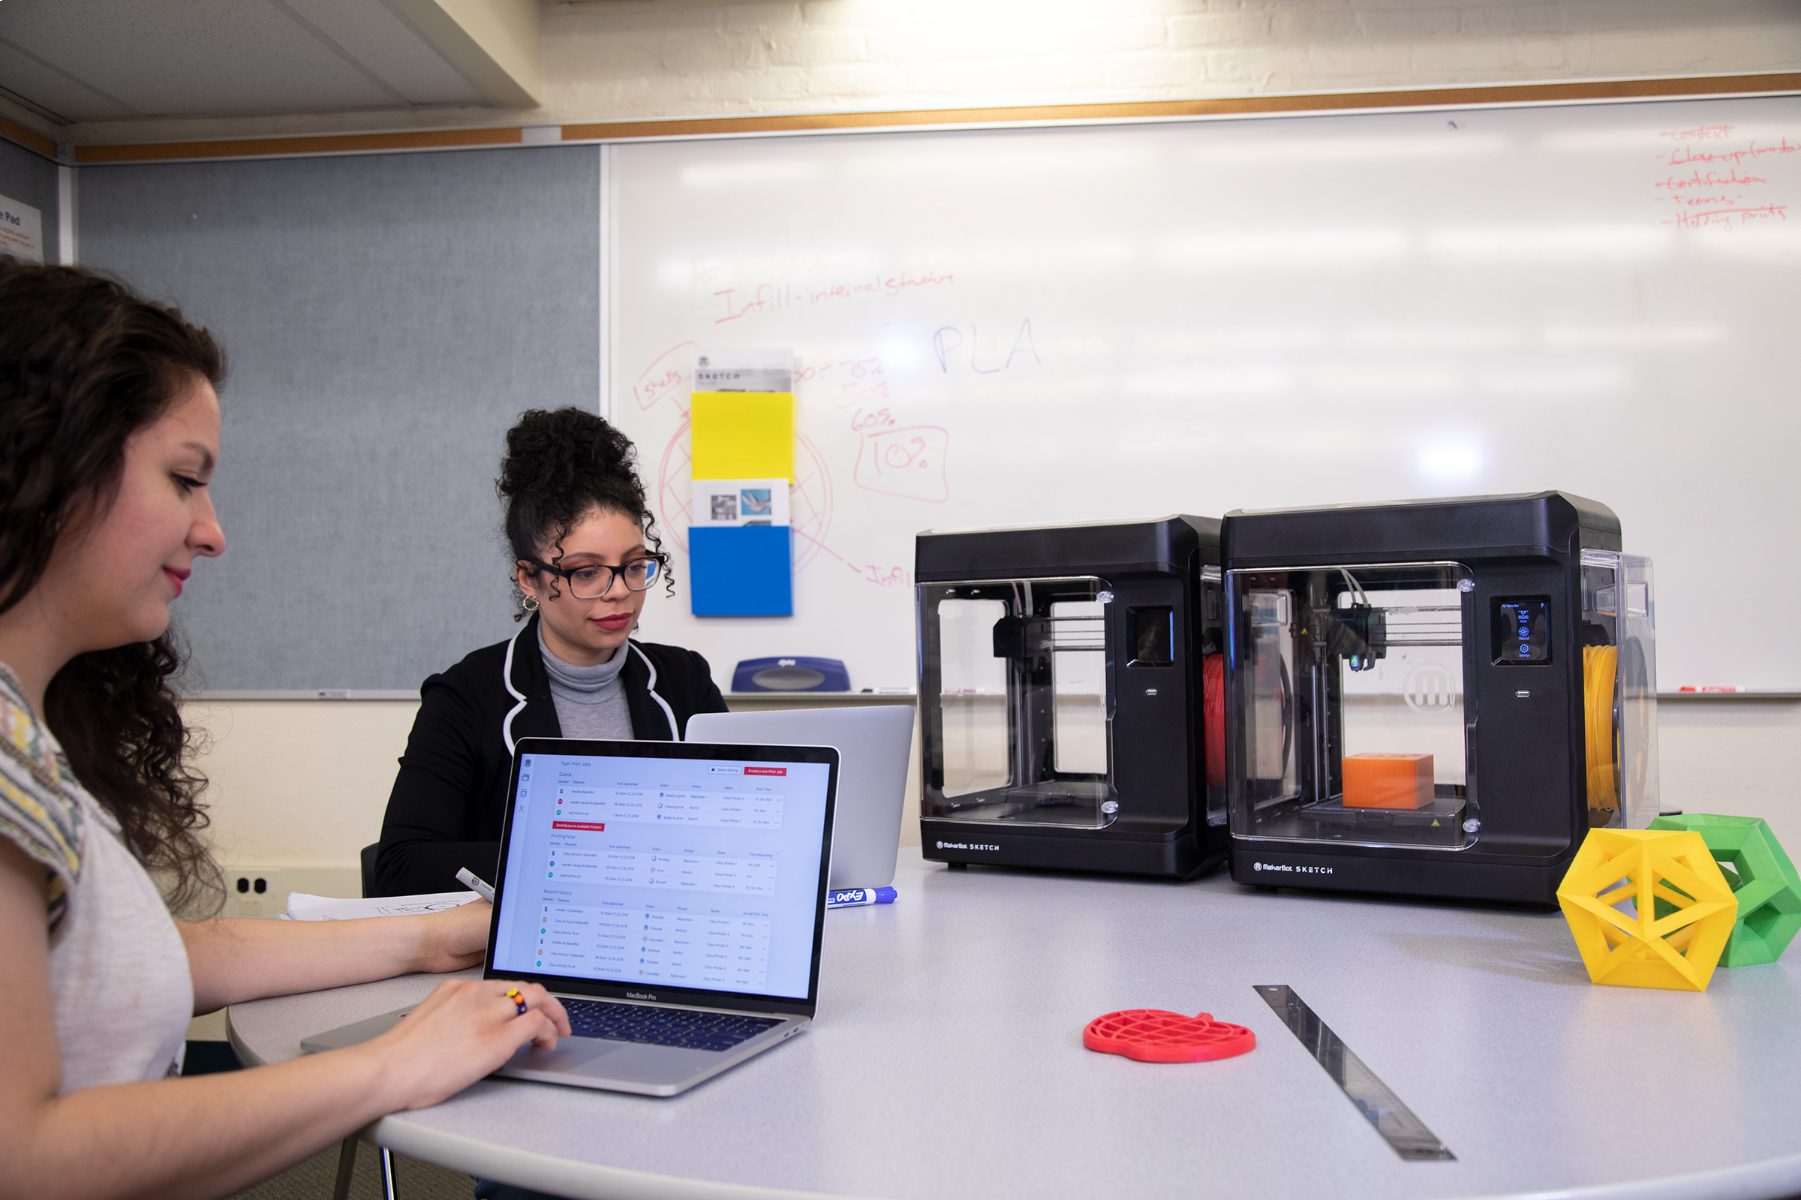 Imprimanta 3D Makerbot Sketch Classroom